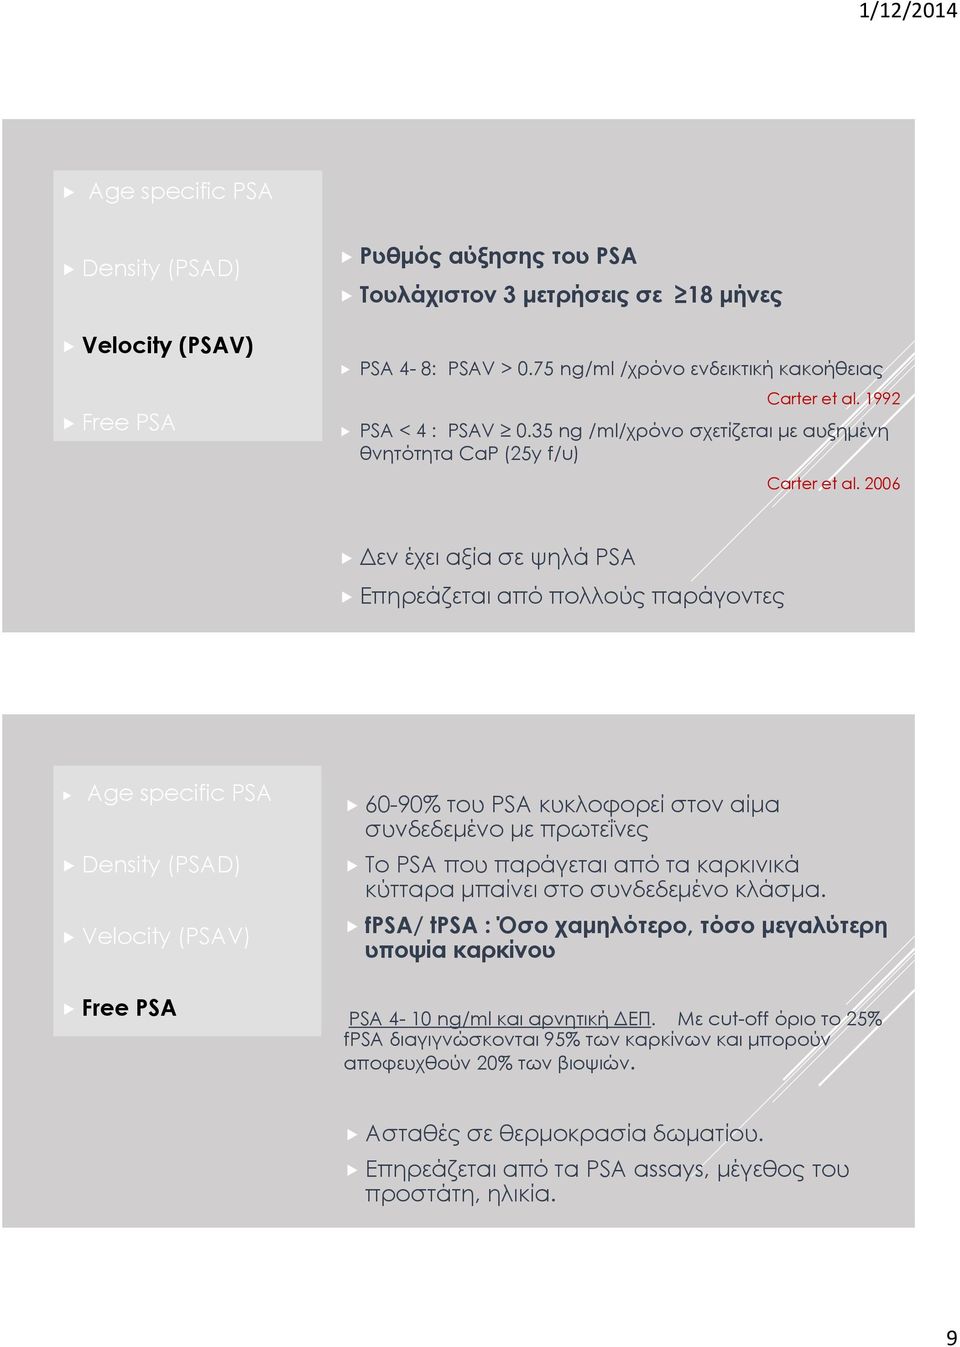 2006 Δεν έχει αξία σε ψηλά PSA Επηρεάζεται από πολλούς παράγοντες Age specific PSA Density (PSAD) Velocity (PSAV) Free PSA 60-90% του PSA κυκλοφορεί στον αίμα συνδεδεμένο με πρωτεΐνες Το PSA που